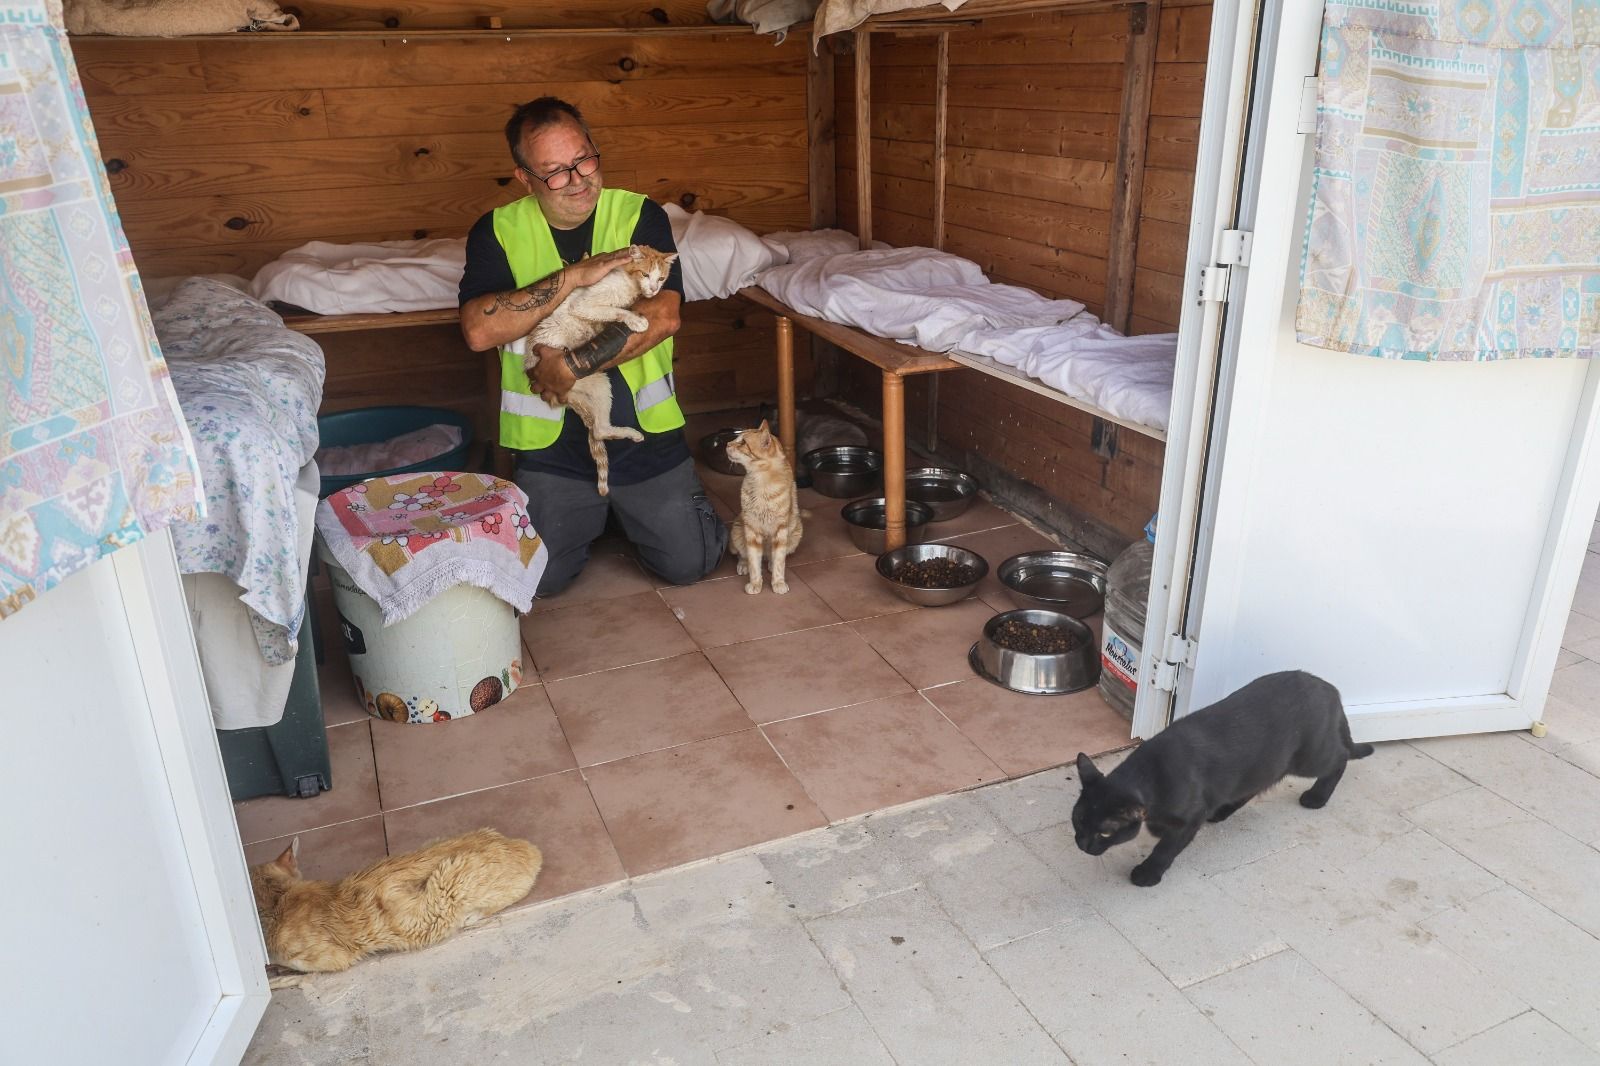 En riesgo el futuro de 400 gatos de Alicante debido a la delicada situación de su protectora